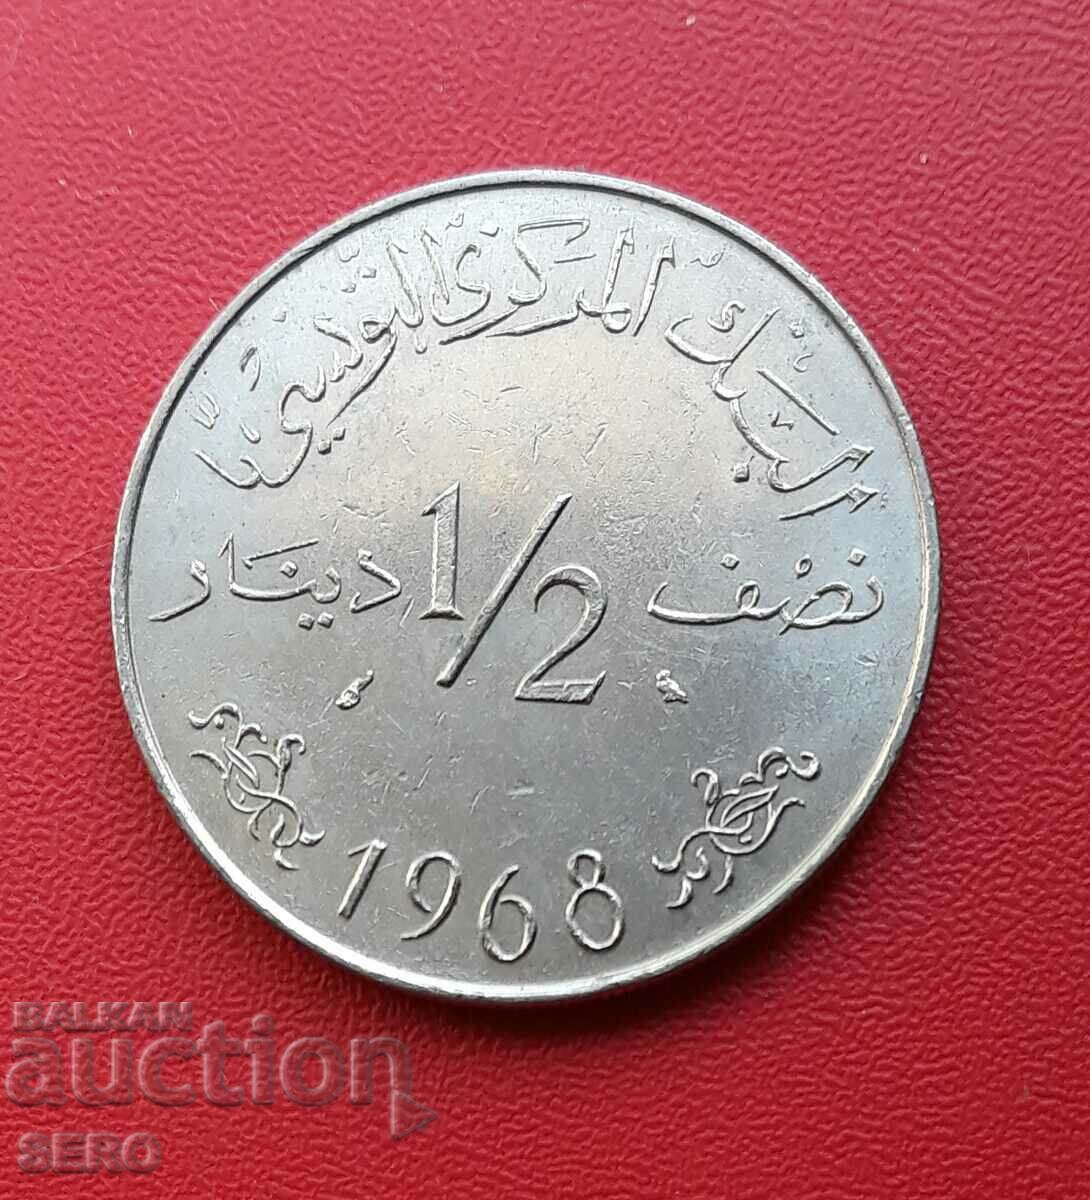 Tunisia - 1/2 dinar 1968 - baterie mică și rar